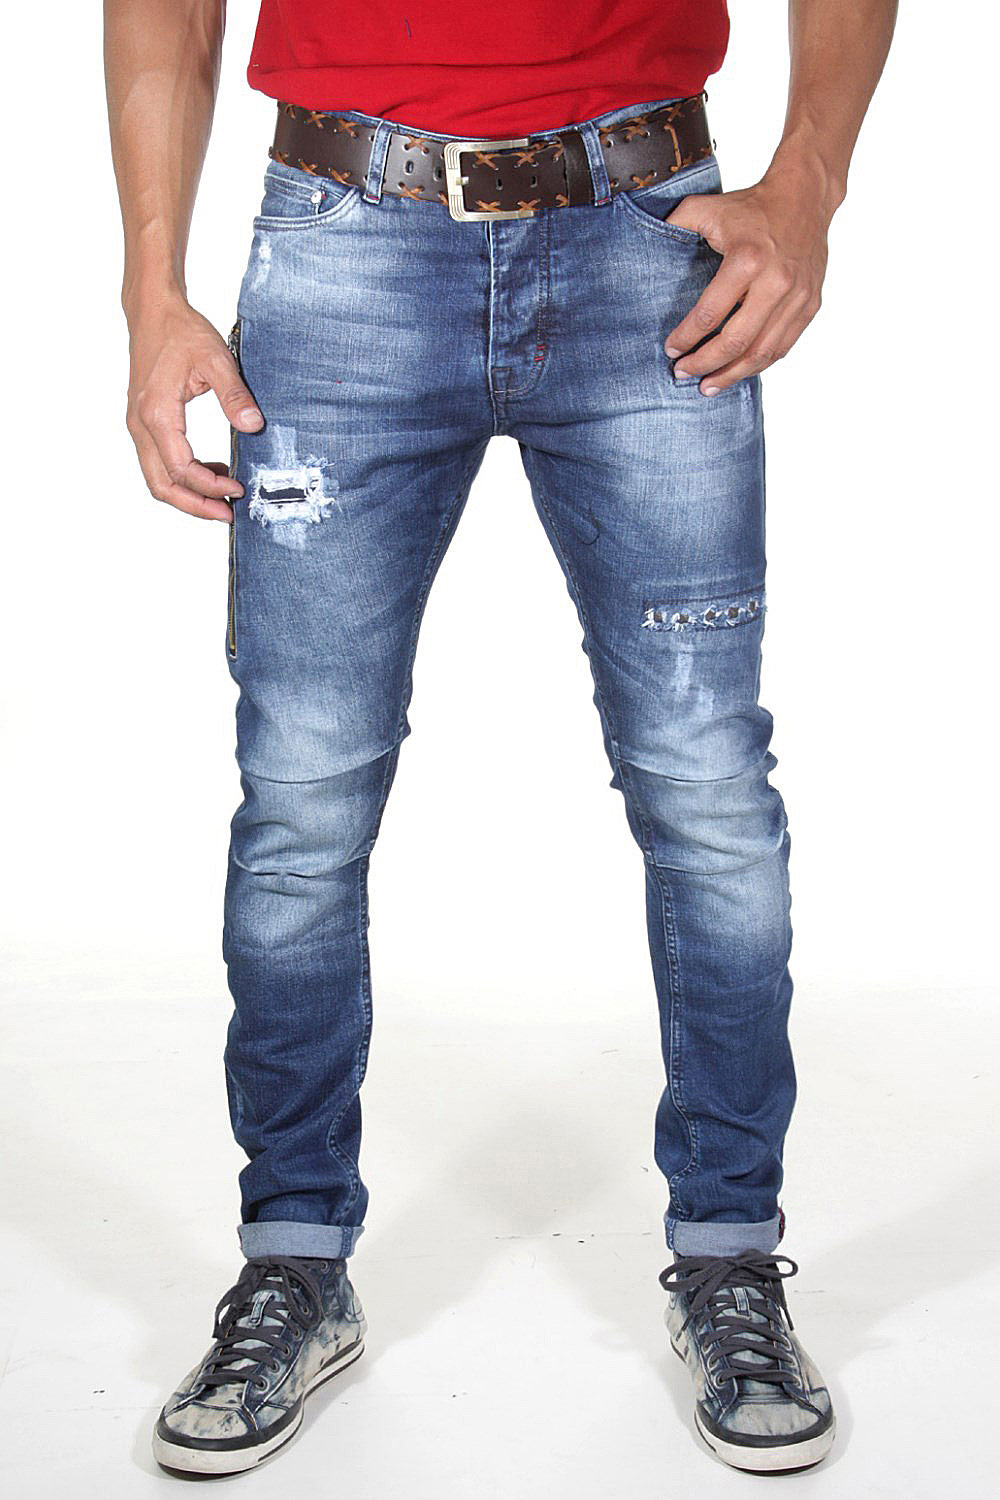 EX-PENT jeans | shop at OBOY.com